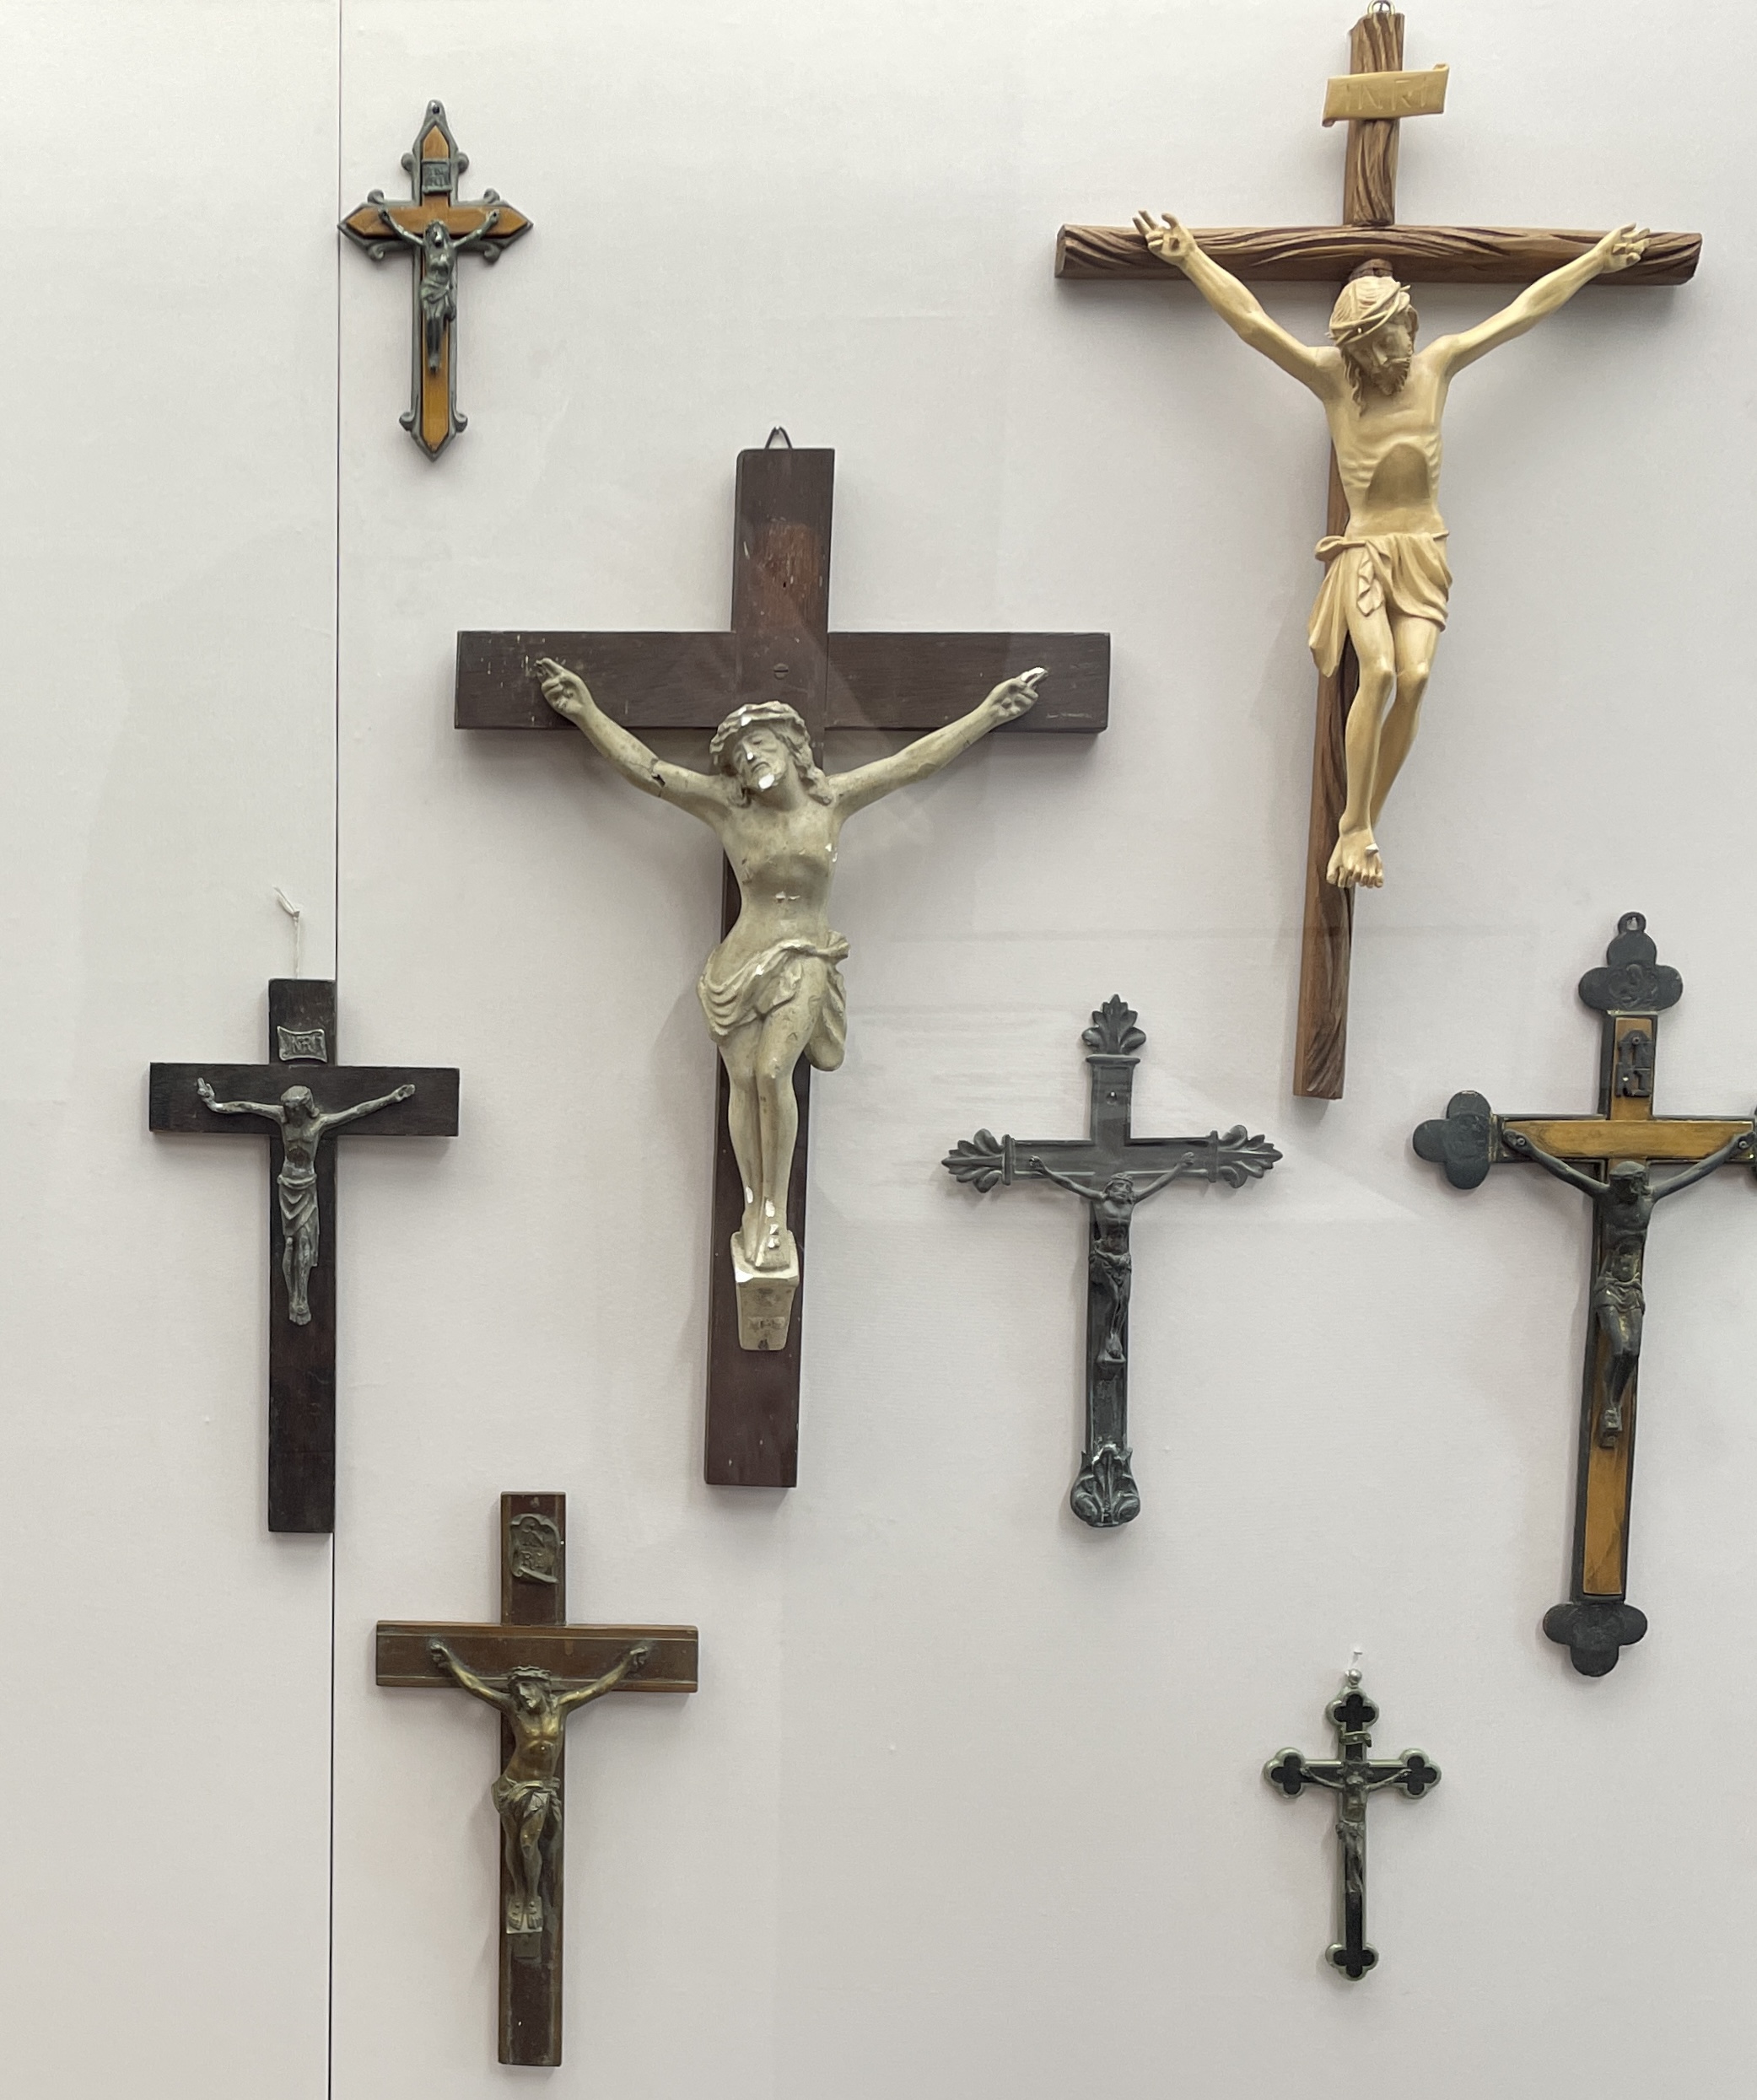 십자가 종류와 그 유래 (Types and origins of crosses)